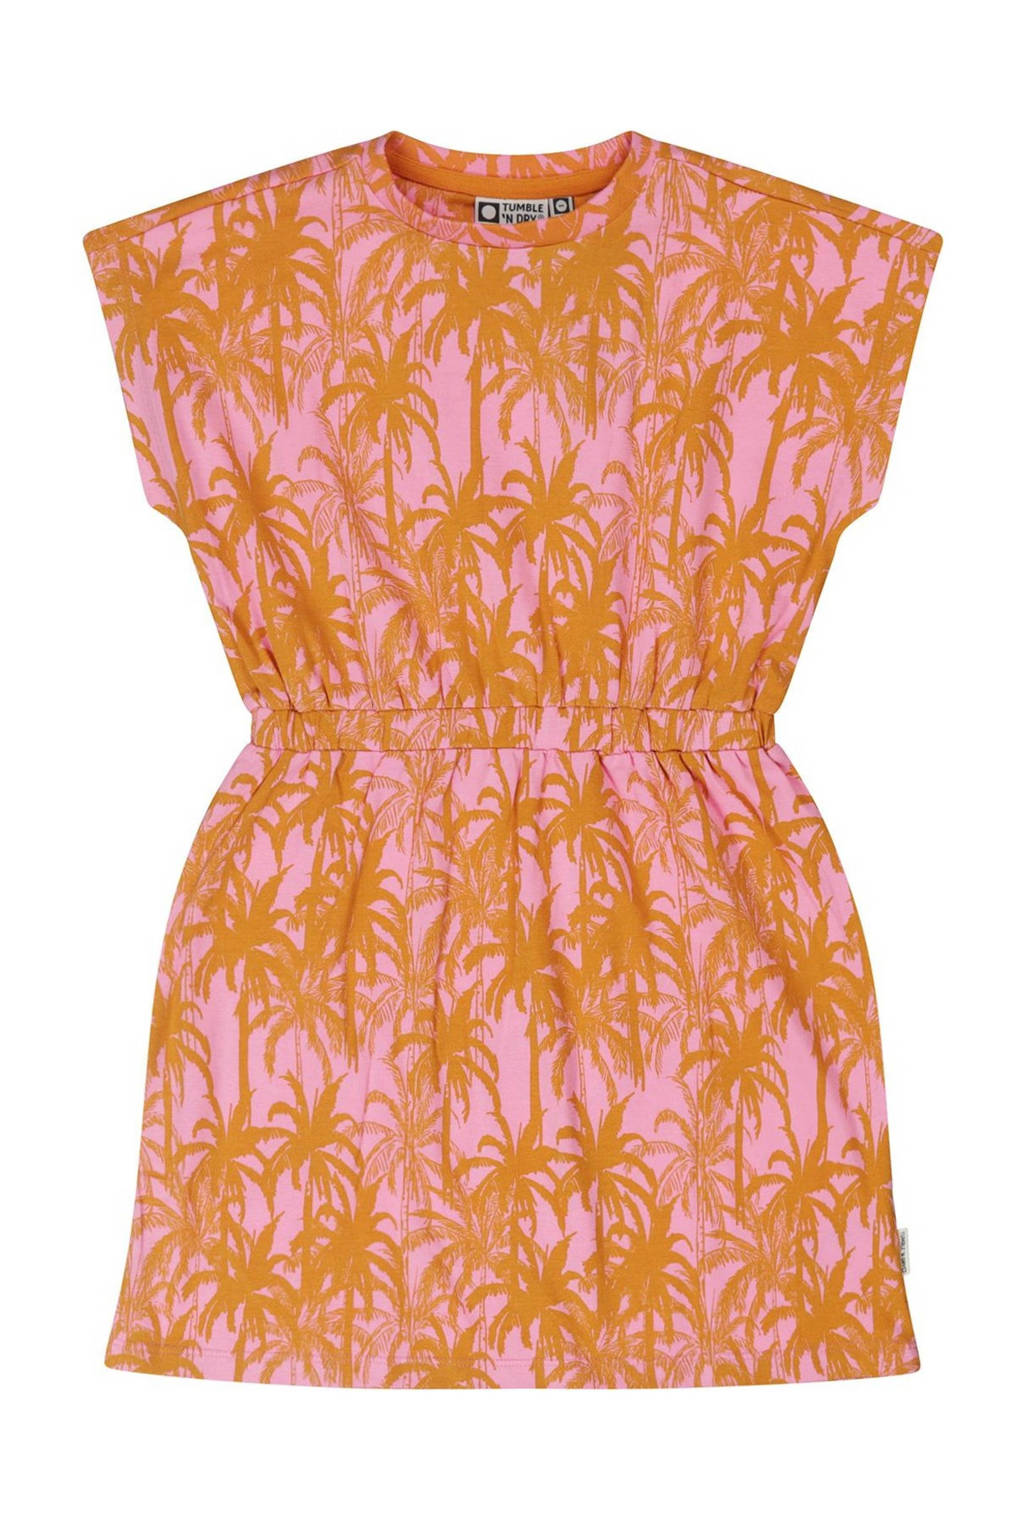 Ontvangende machine uitzending extract Tumble 'n Dry Mid jurk Hula met all over print roze/oranje | kleertjes.com